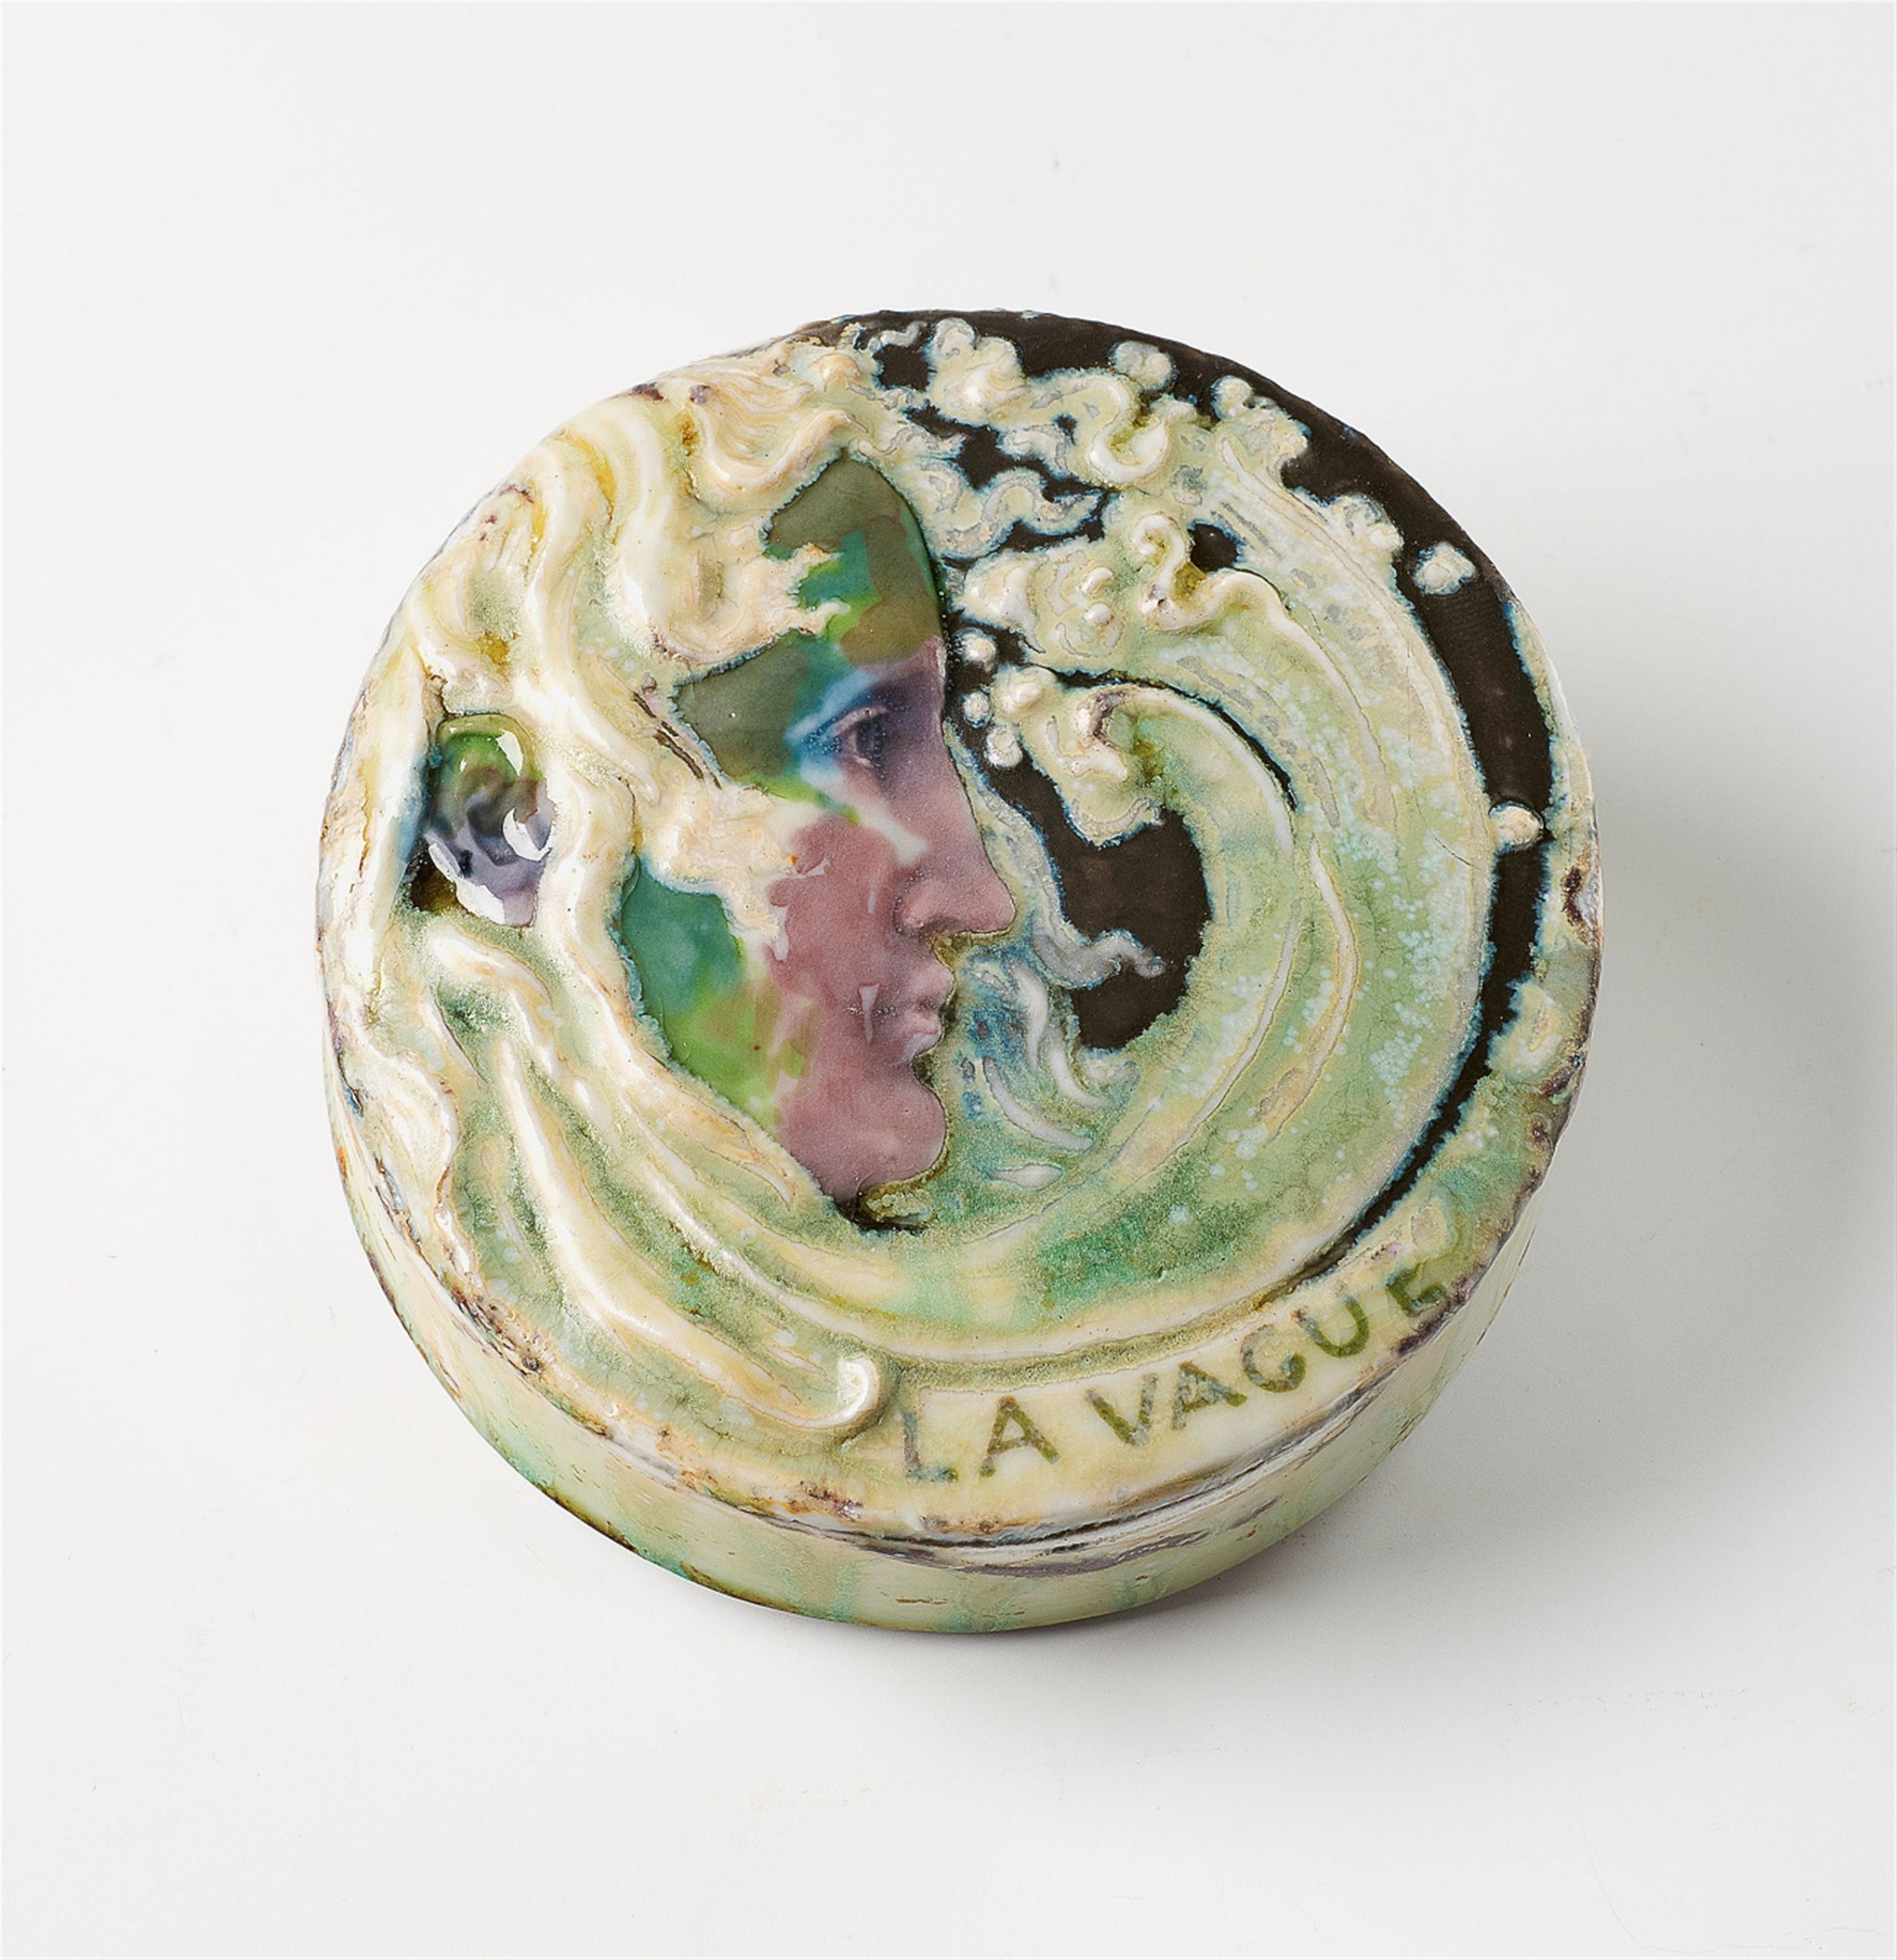 A Sèvres porcelain "La Vague" paperweight by Taxile Doat - image-1